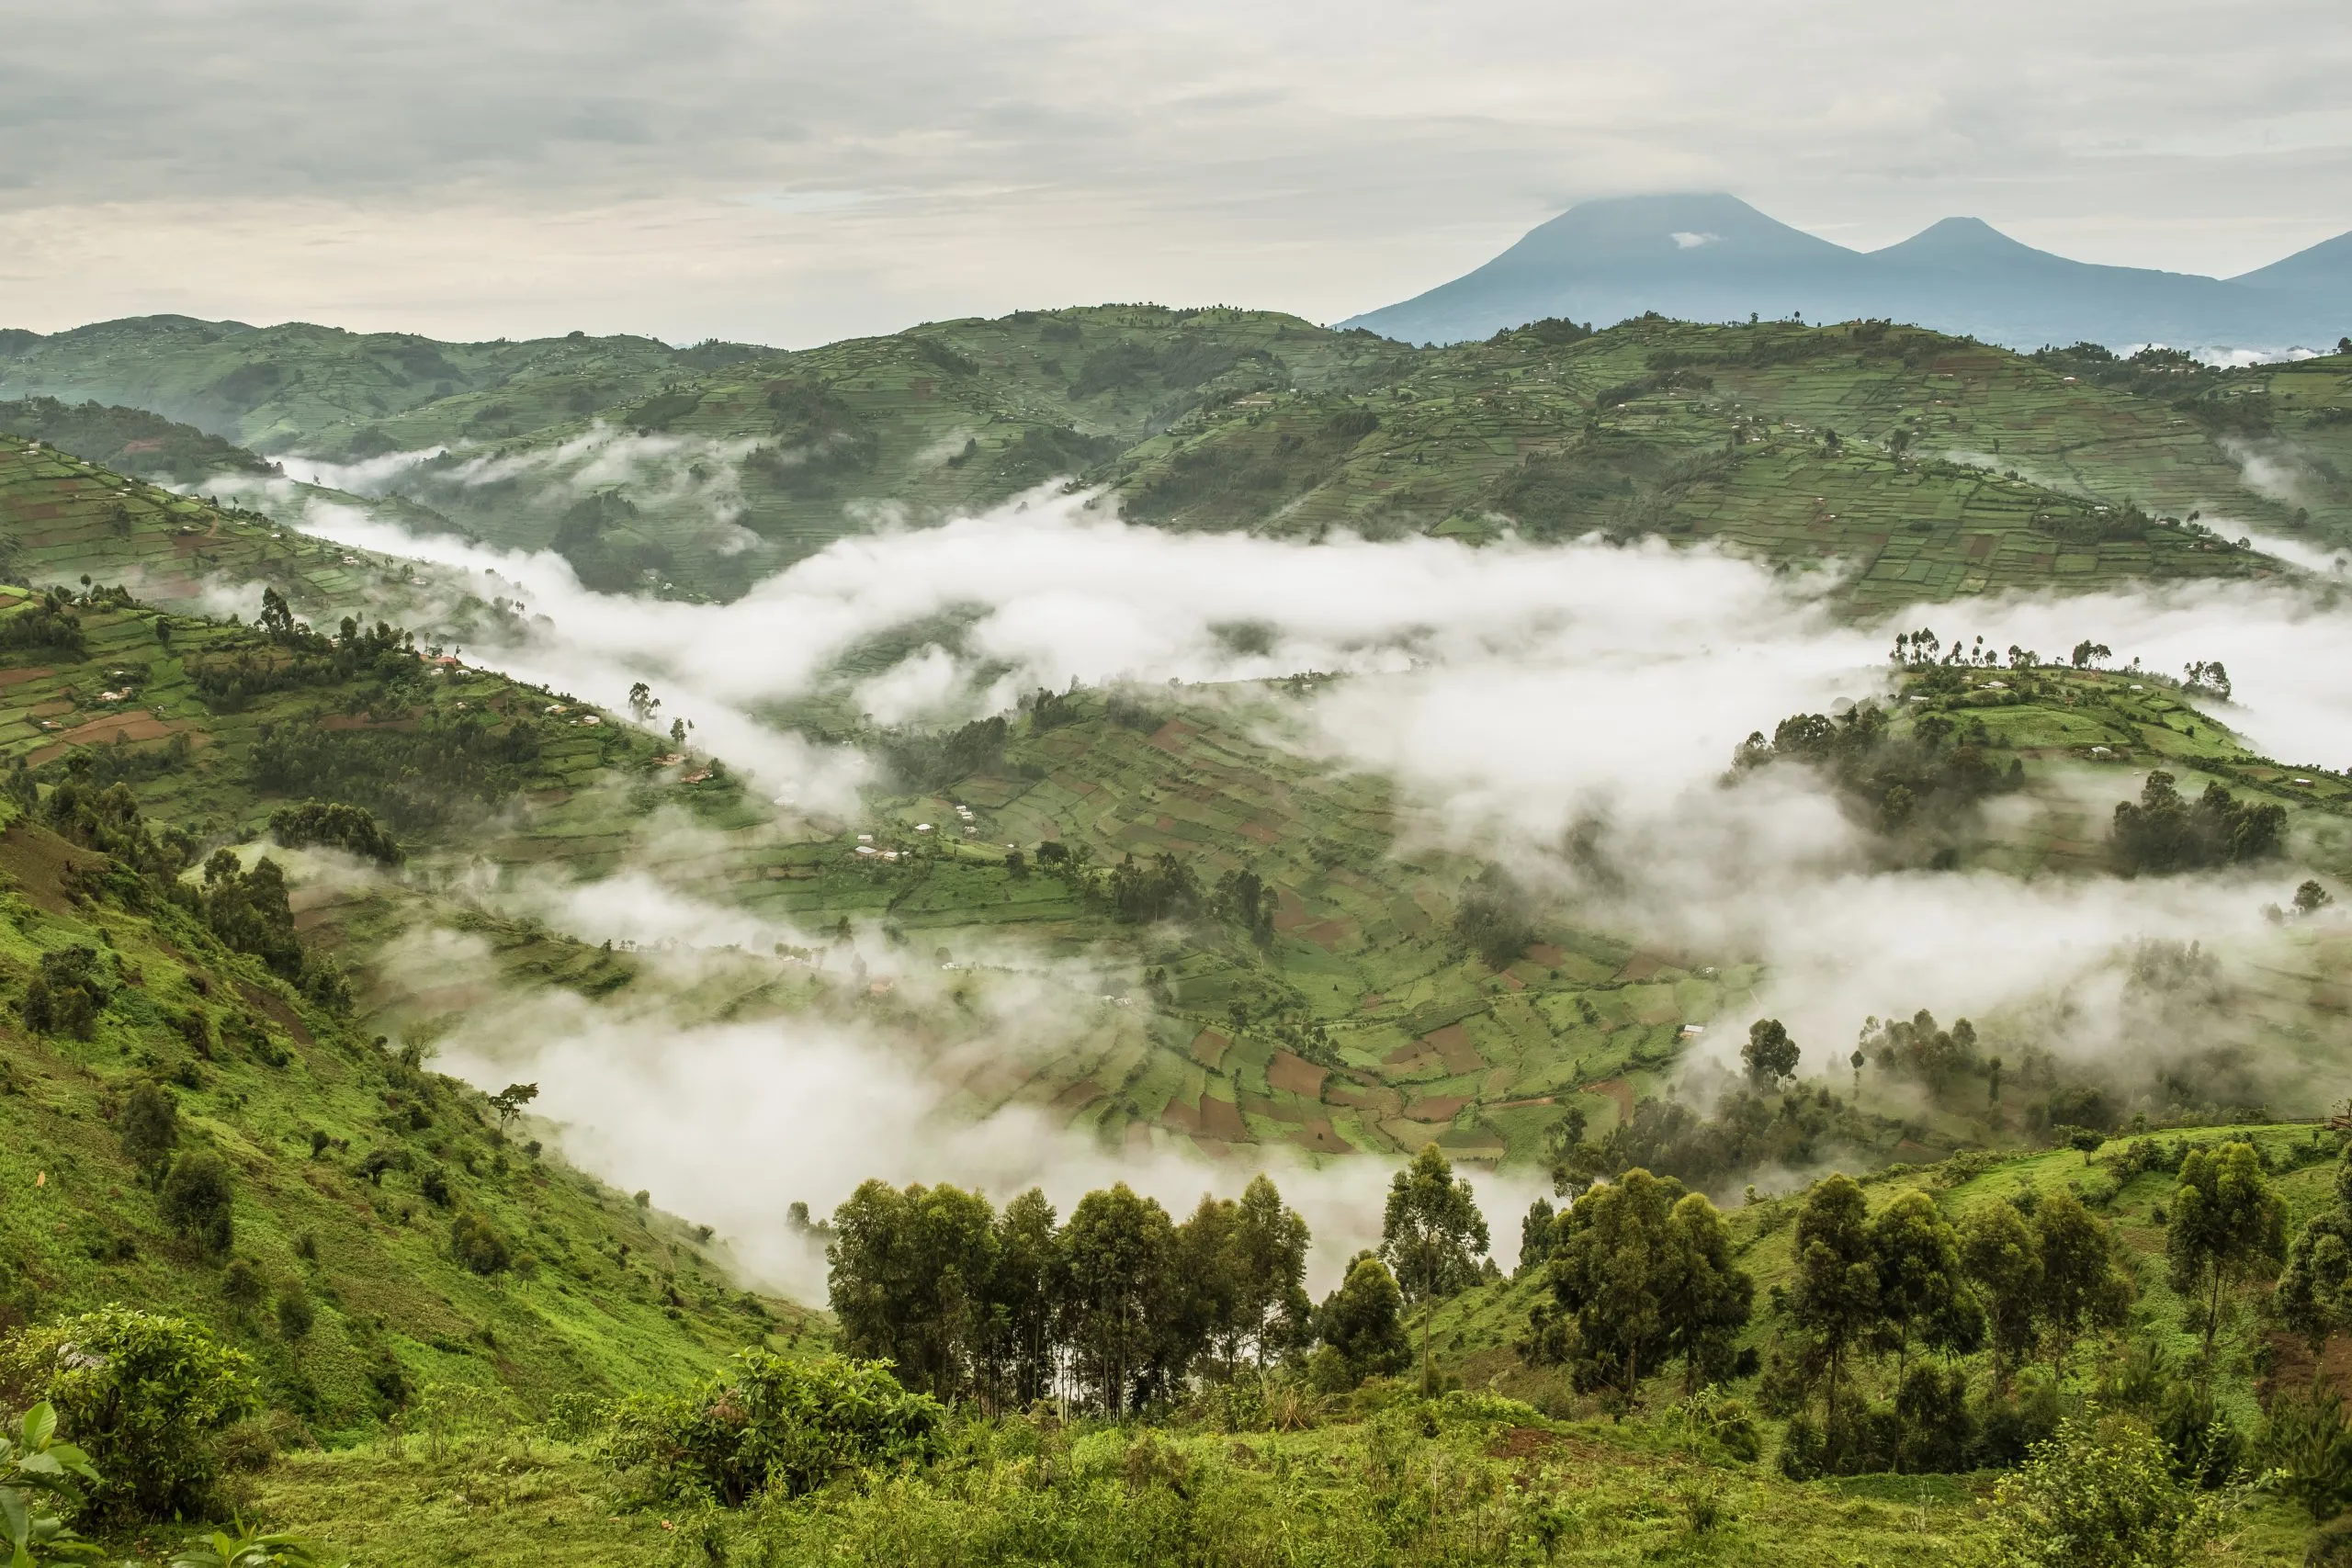 Paysage vallonné typique composé de champs partiellement recouverts de brouillard près du parc national de Bwindi Impénétrable en Ouganda.